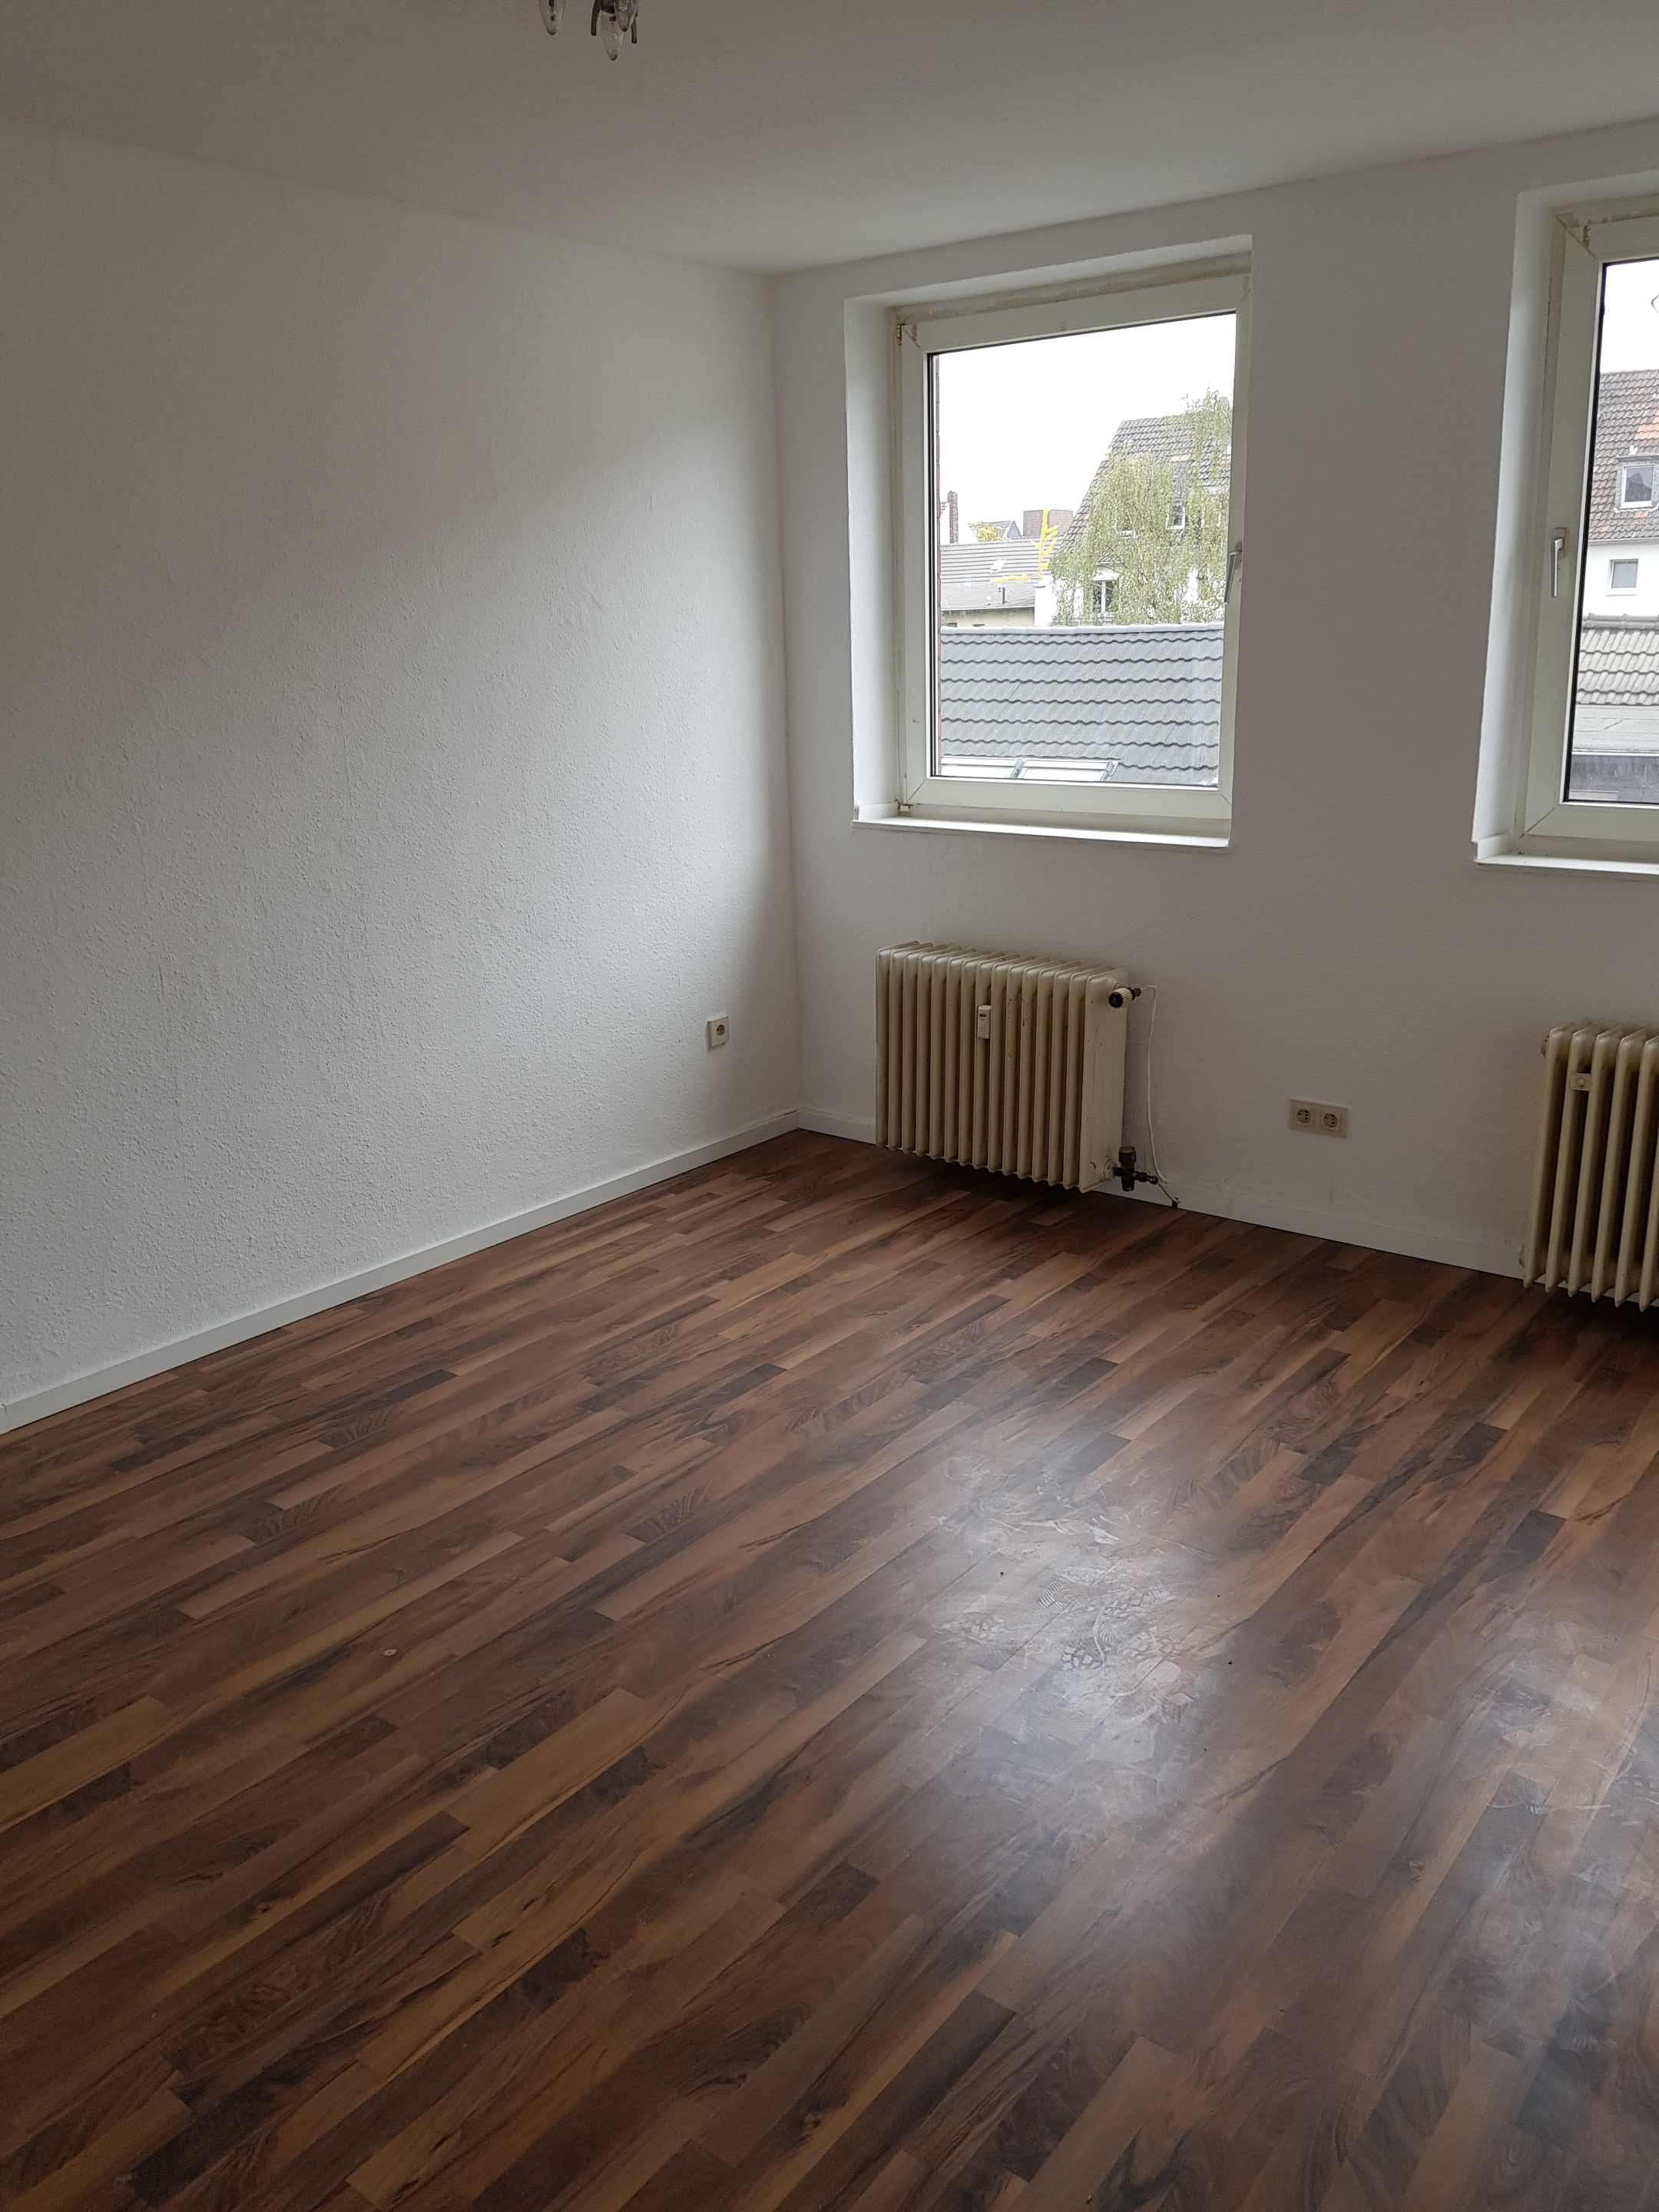 Single apartment oberhausen